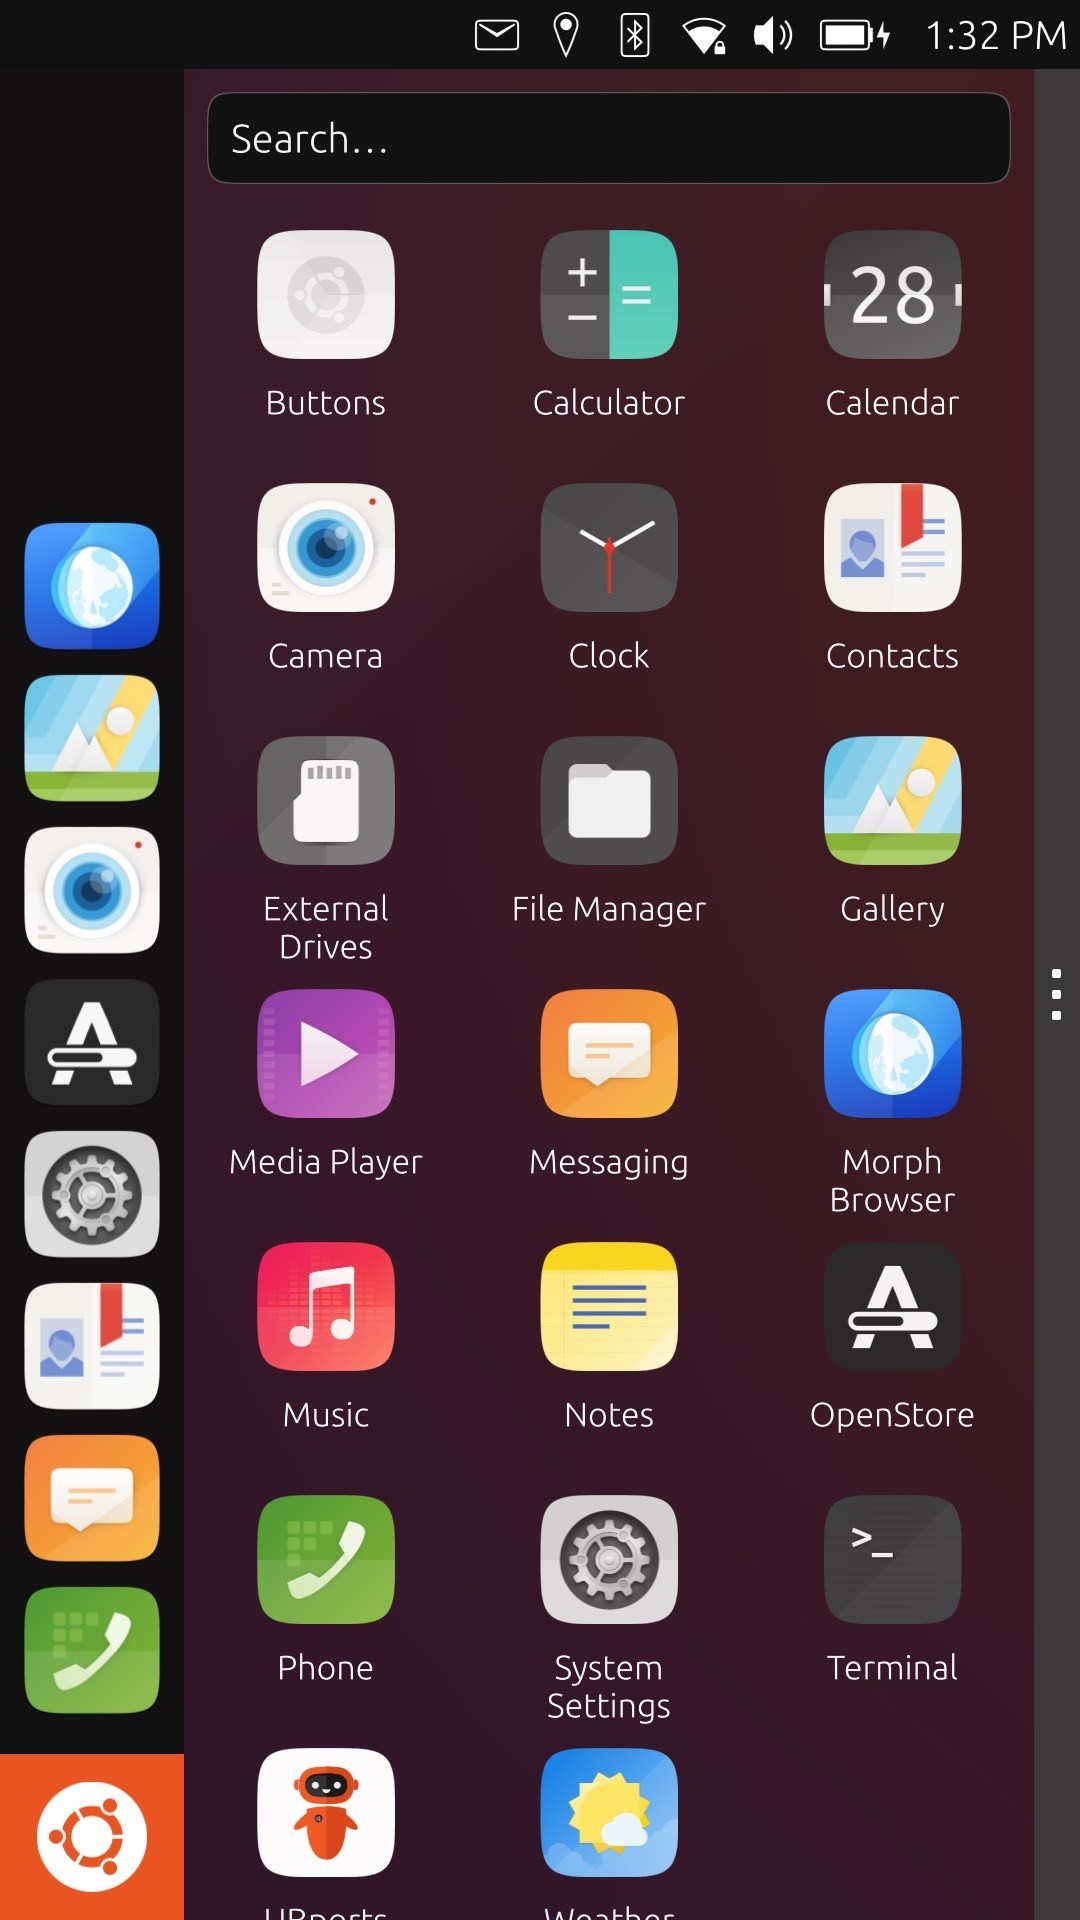 Ubuntu Touch OTA-15 chega em 16 de dezembro